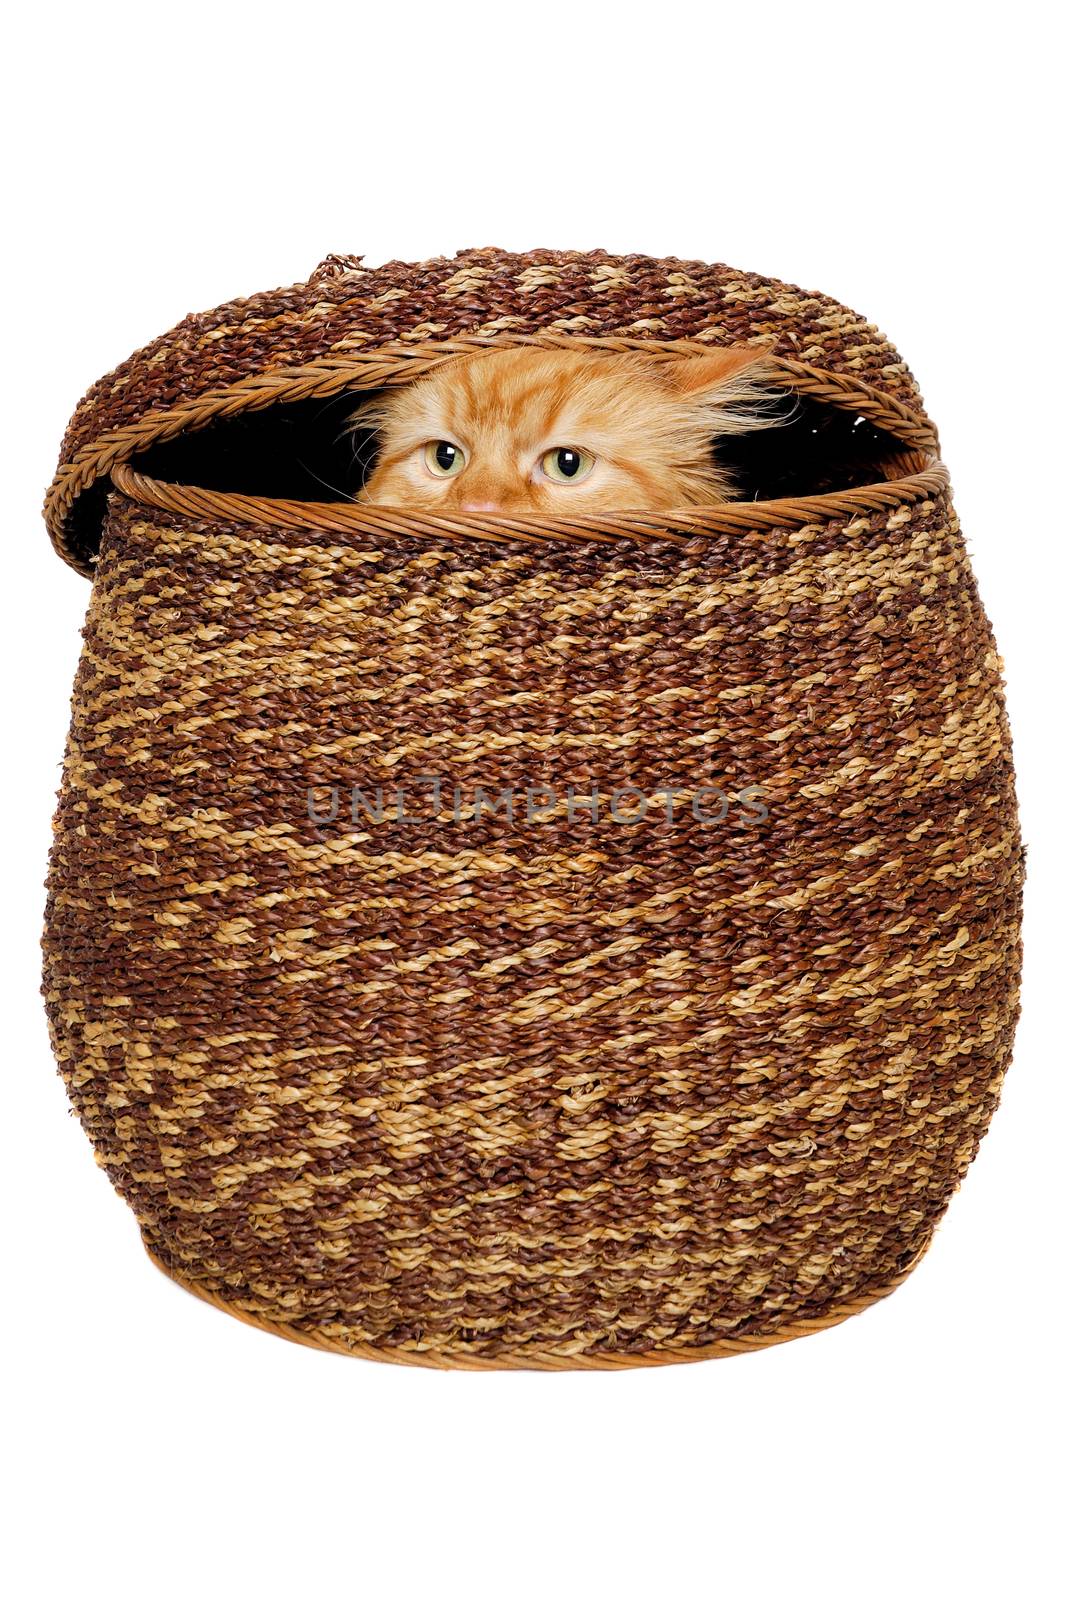 Cat is hiding in a basket. by cfoto